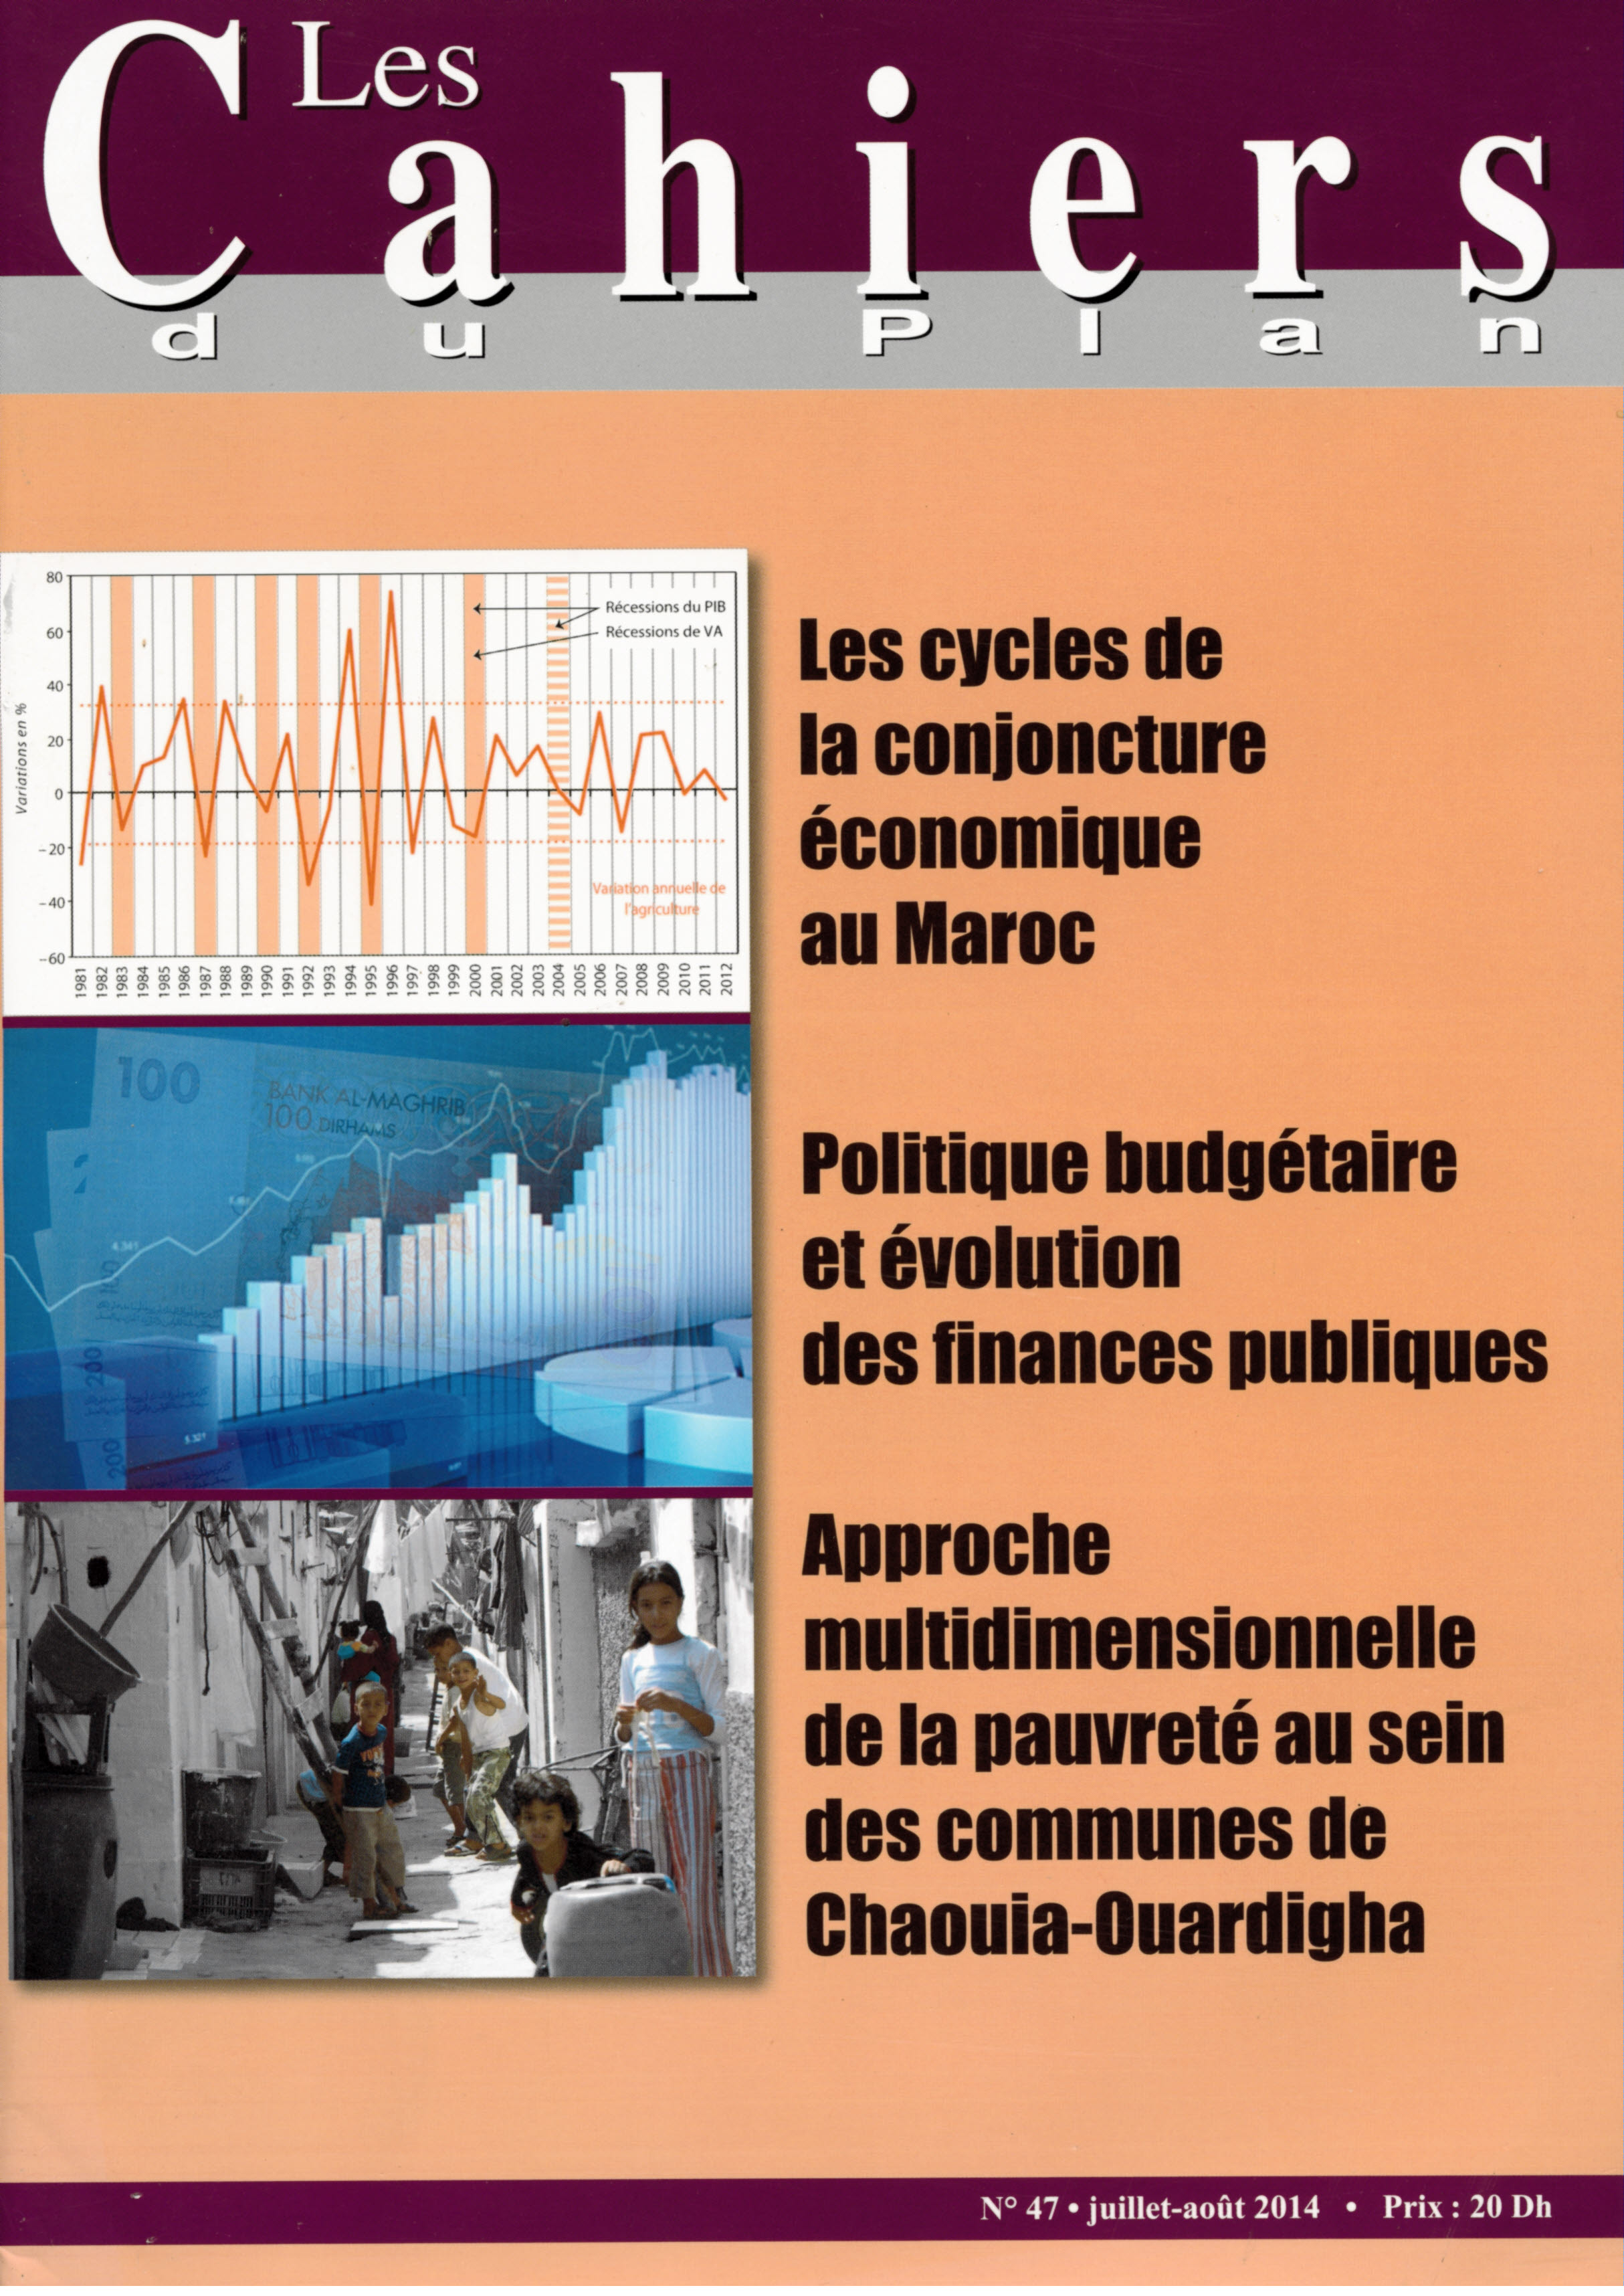 Les Cahiers du Plan N° 47 - Juillet / août 2014